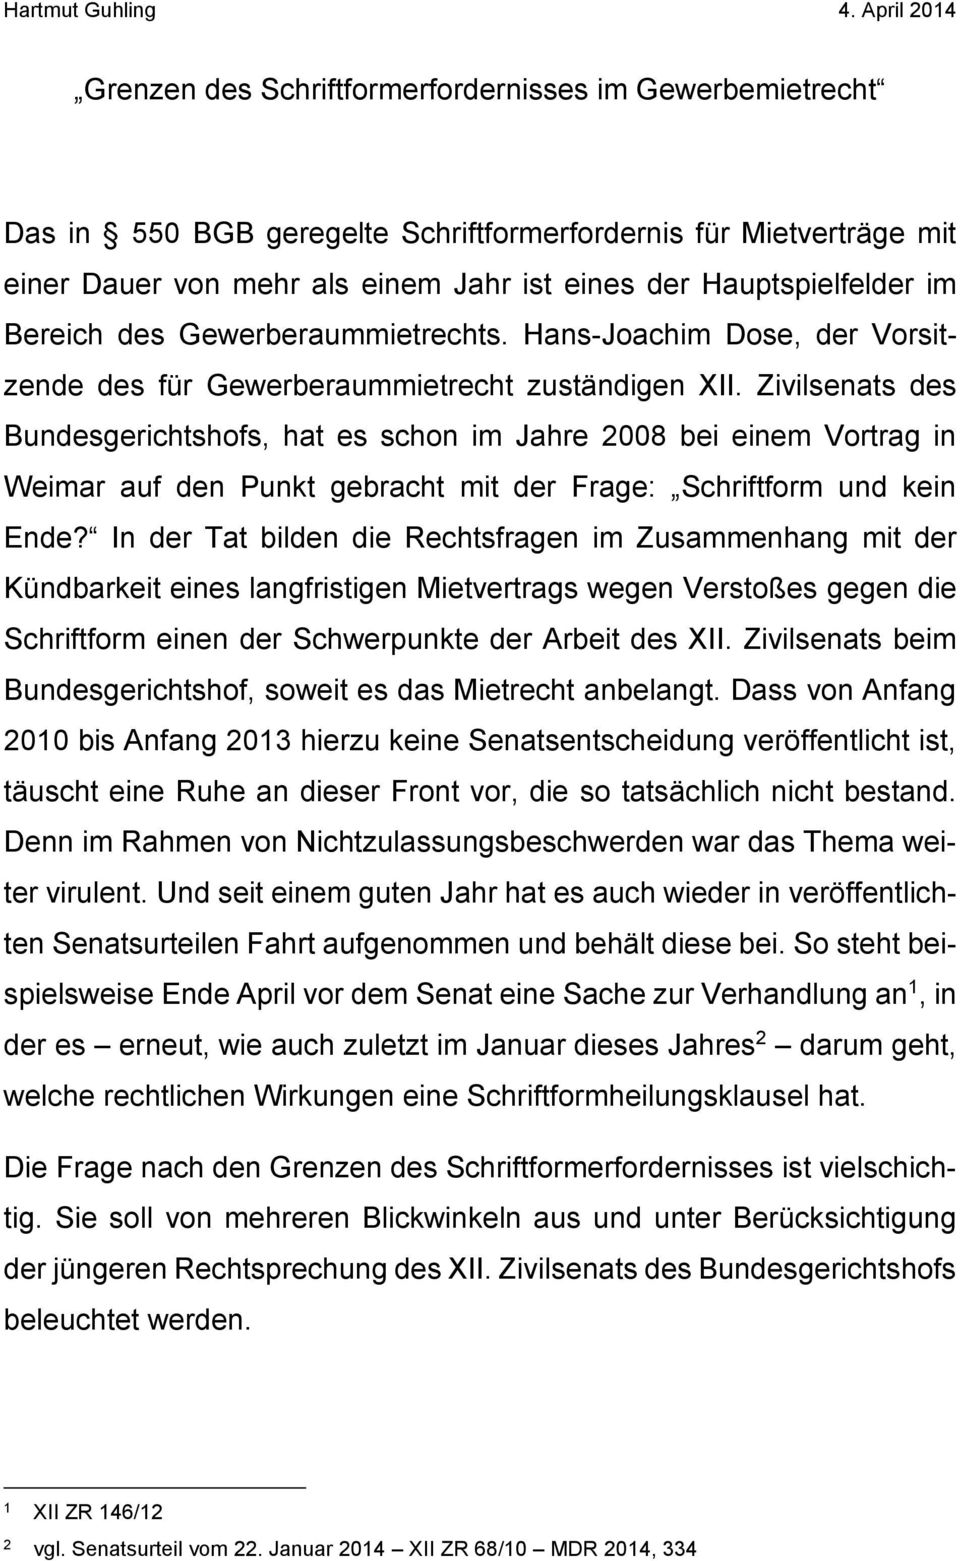 Zivilsenats des Bundesgerichtshofs, hat es schon im Jahre 2008 bei einem Vortrag in Weimar auf den Punkt gebracht mit der Frage: Schriftform und kein Ende?